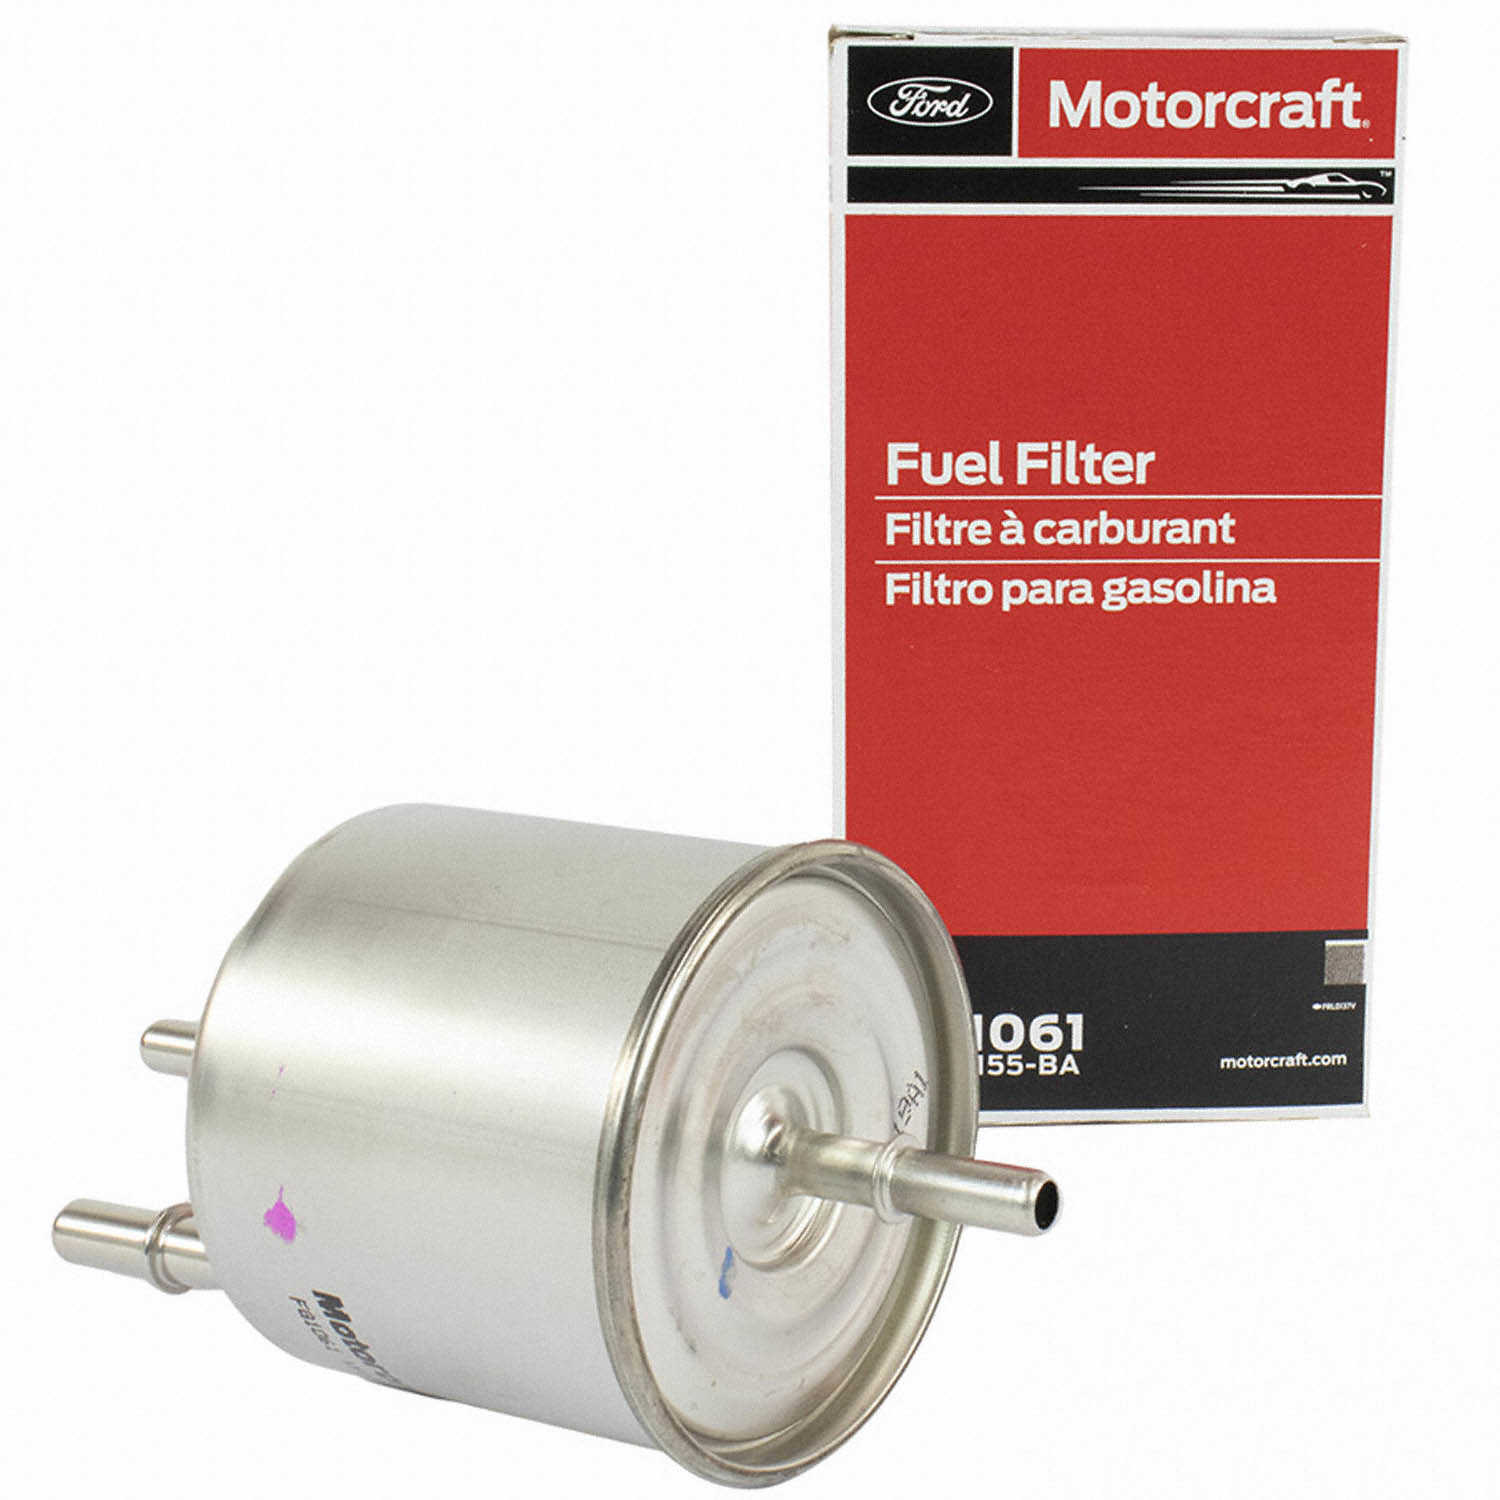 MOTORCRAFT - Fuel Filter - MOT FG-1061